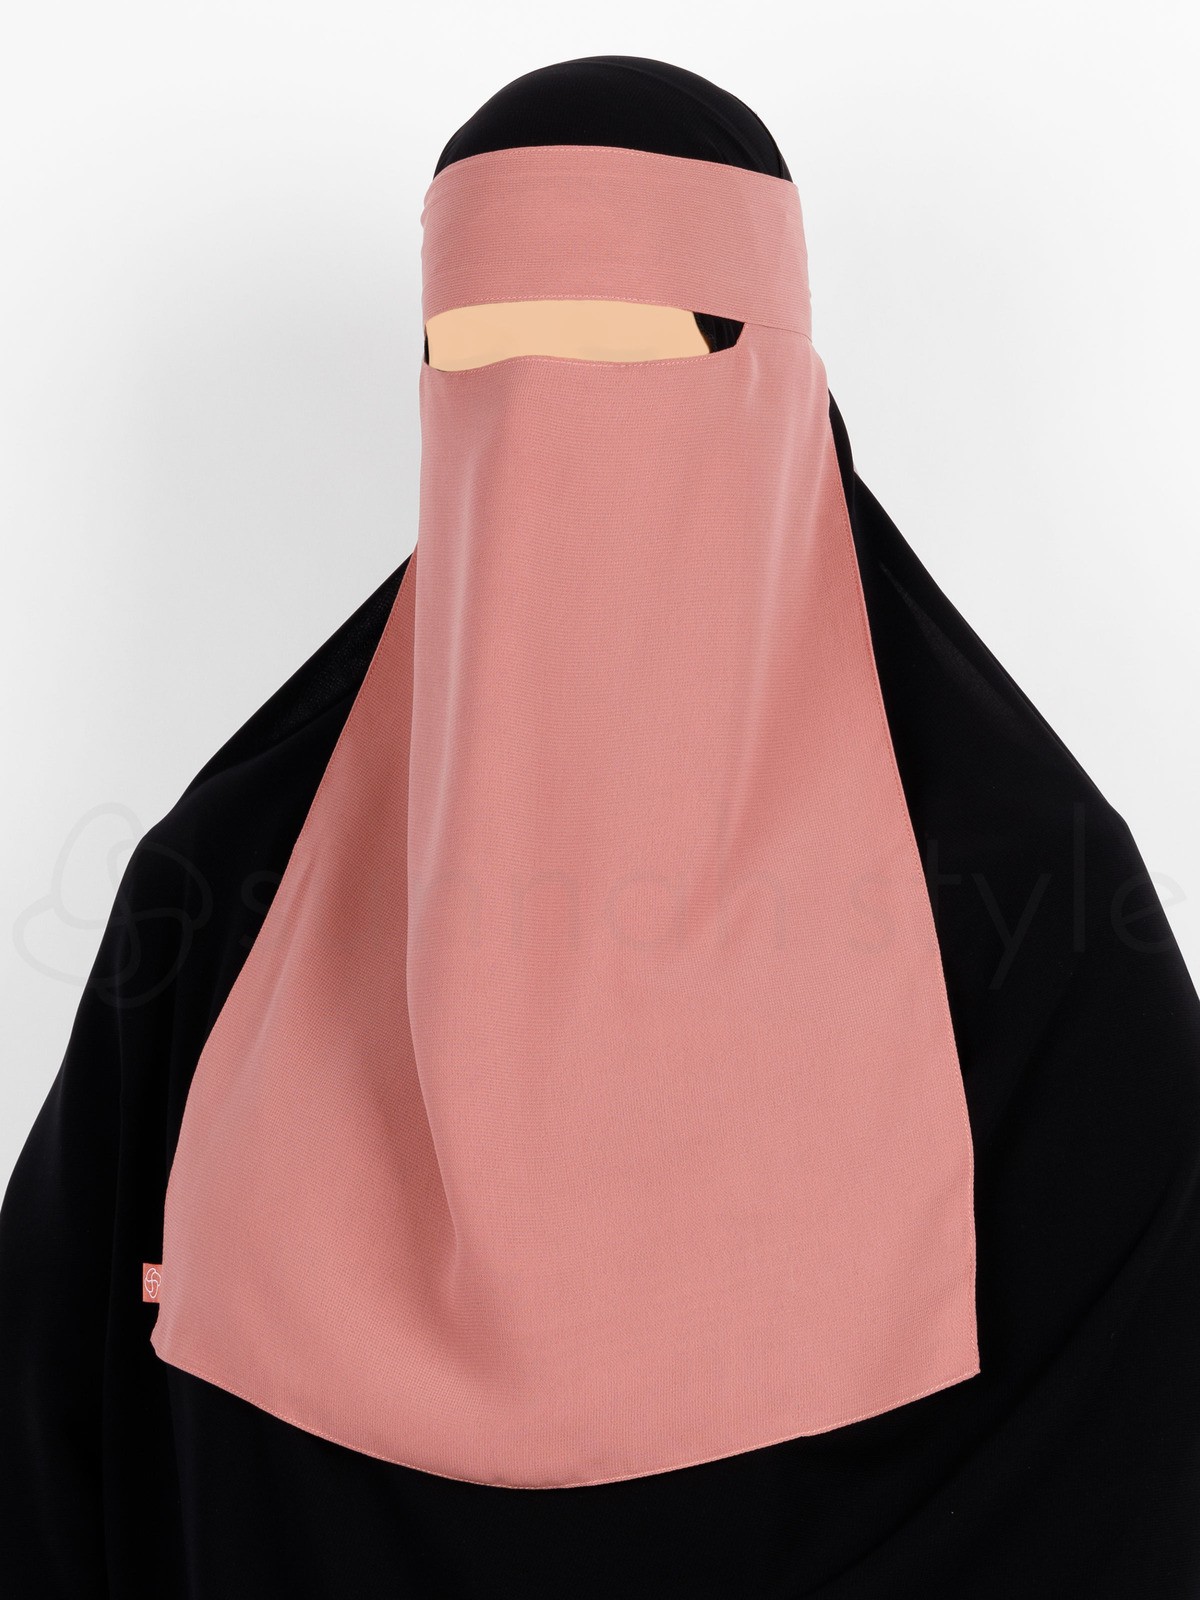 Sunnah Style - Narrow No-Pinch One Layer Niqab (Coral)